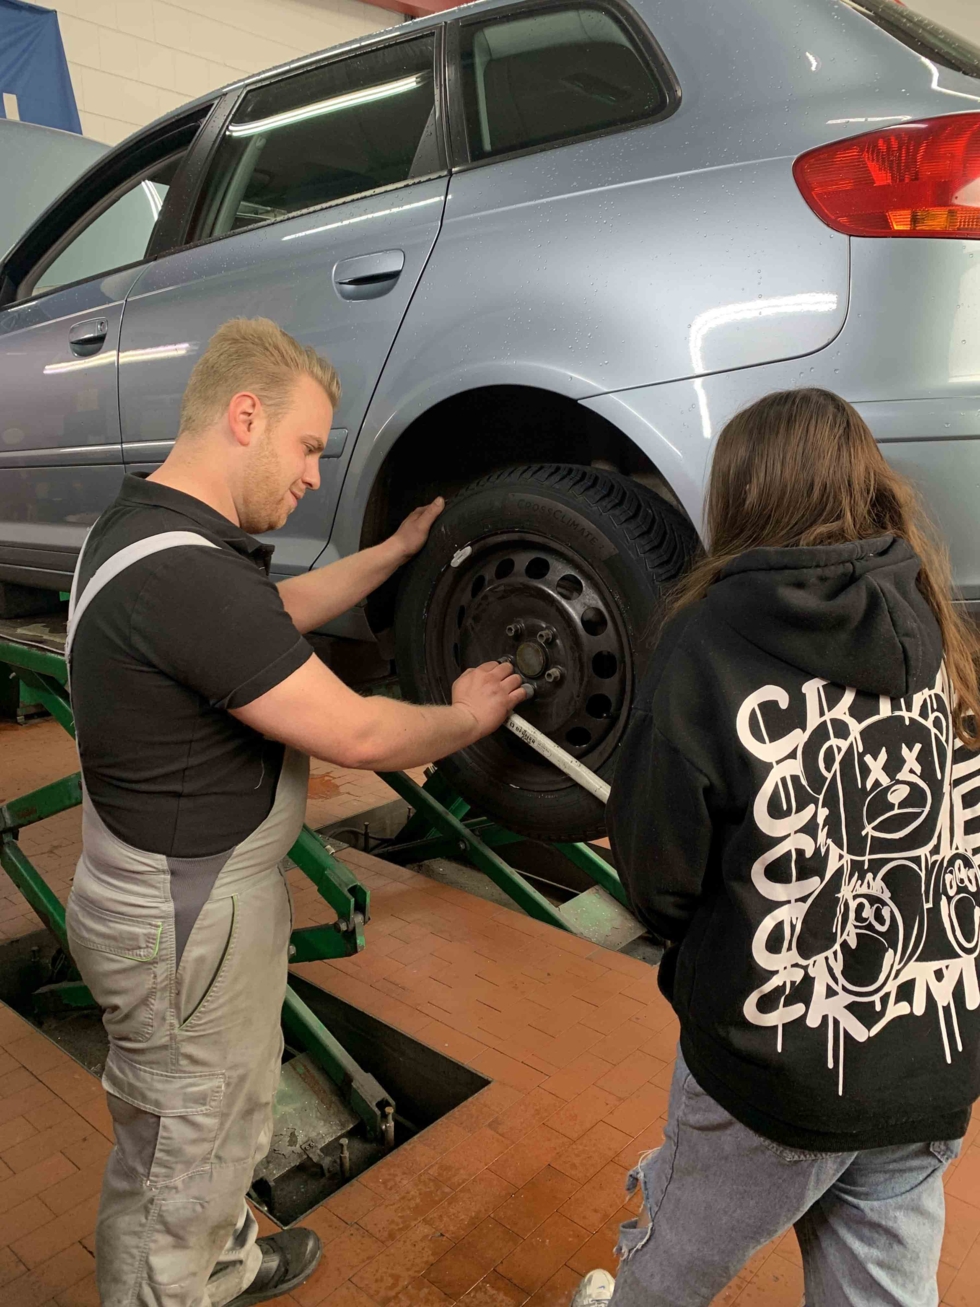 Girls'Day-Teilnehmerin und Mechaniker schrauben an einem Auto